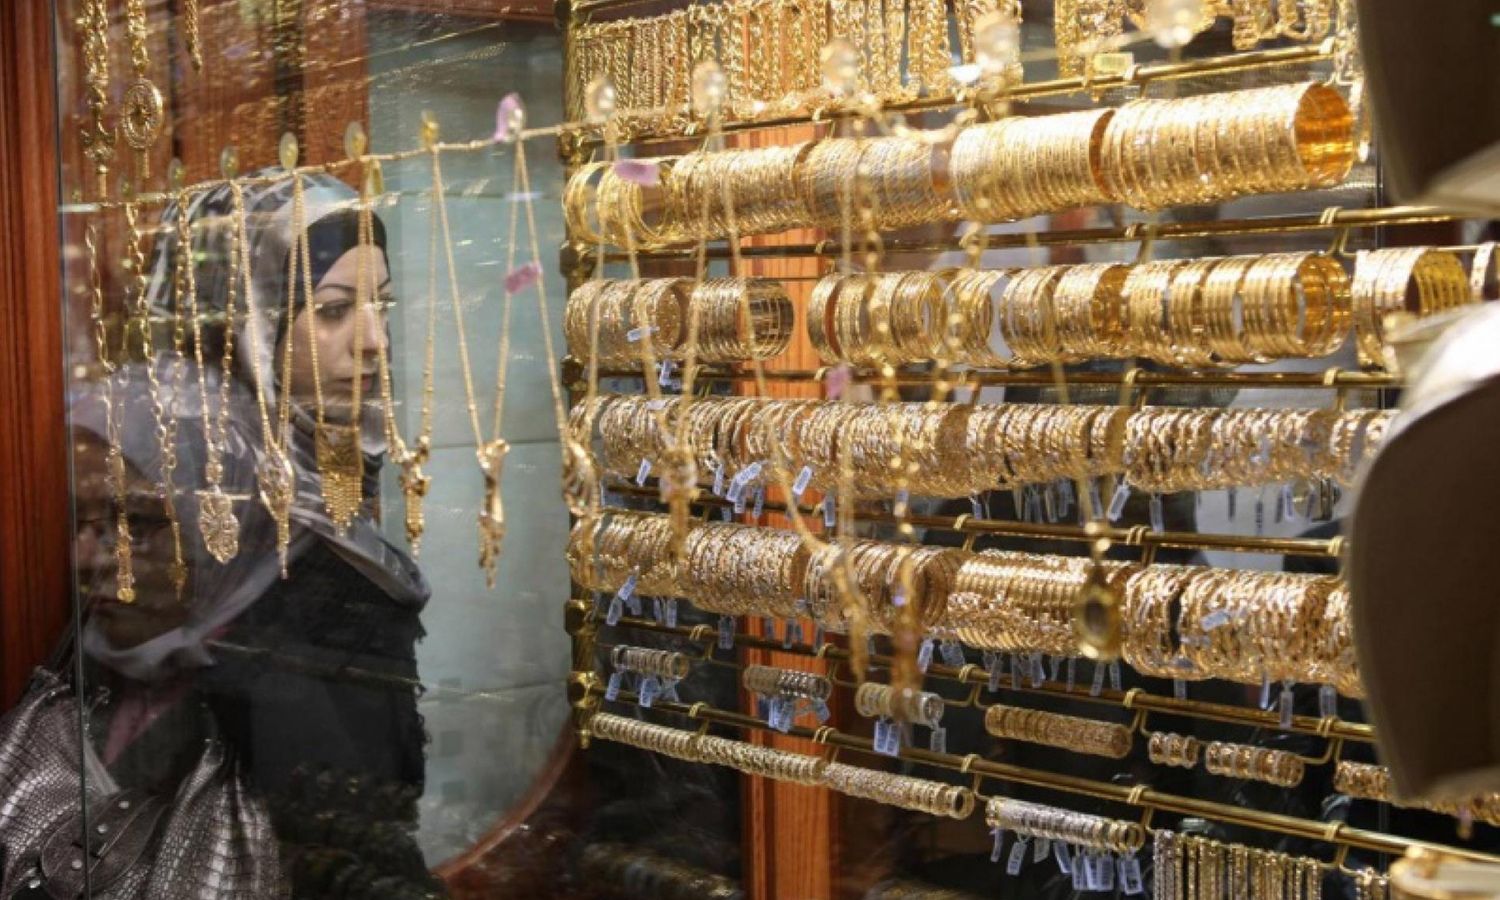 واجهة محل لبيع المجوهرات في سوق دمشق القديمة (مال وأعمال/ فيس بوك)